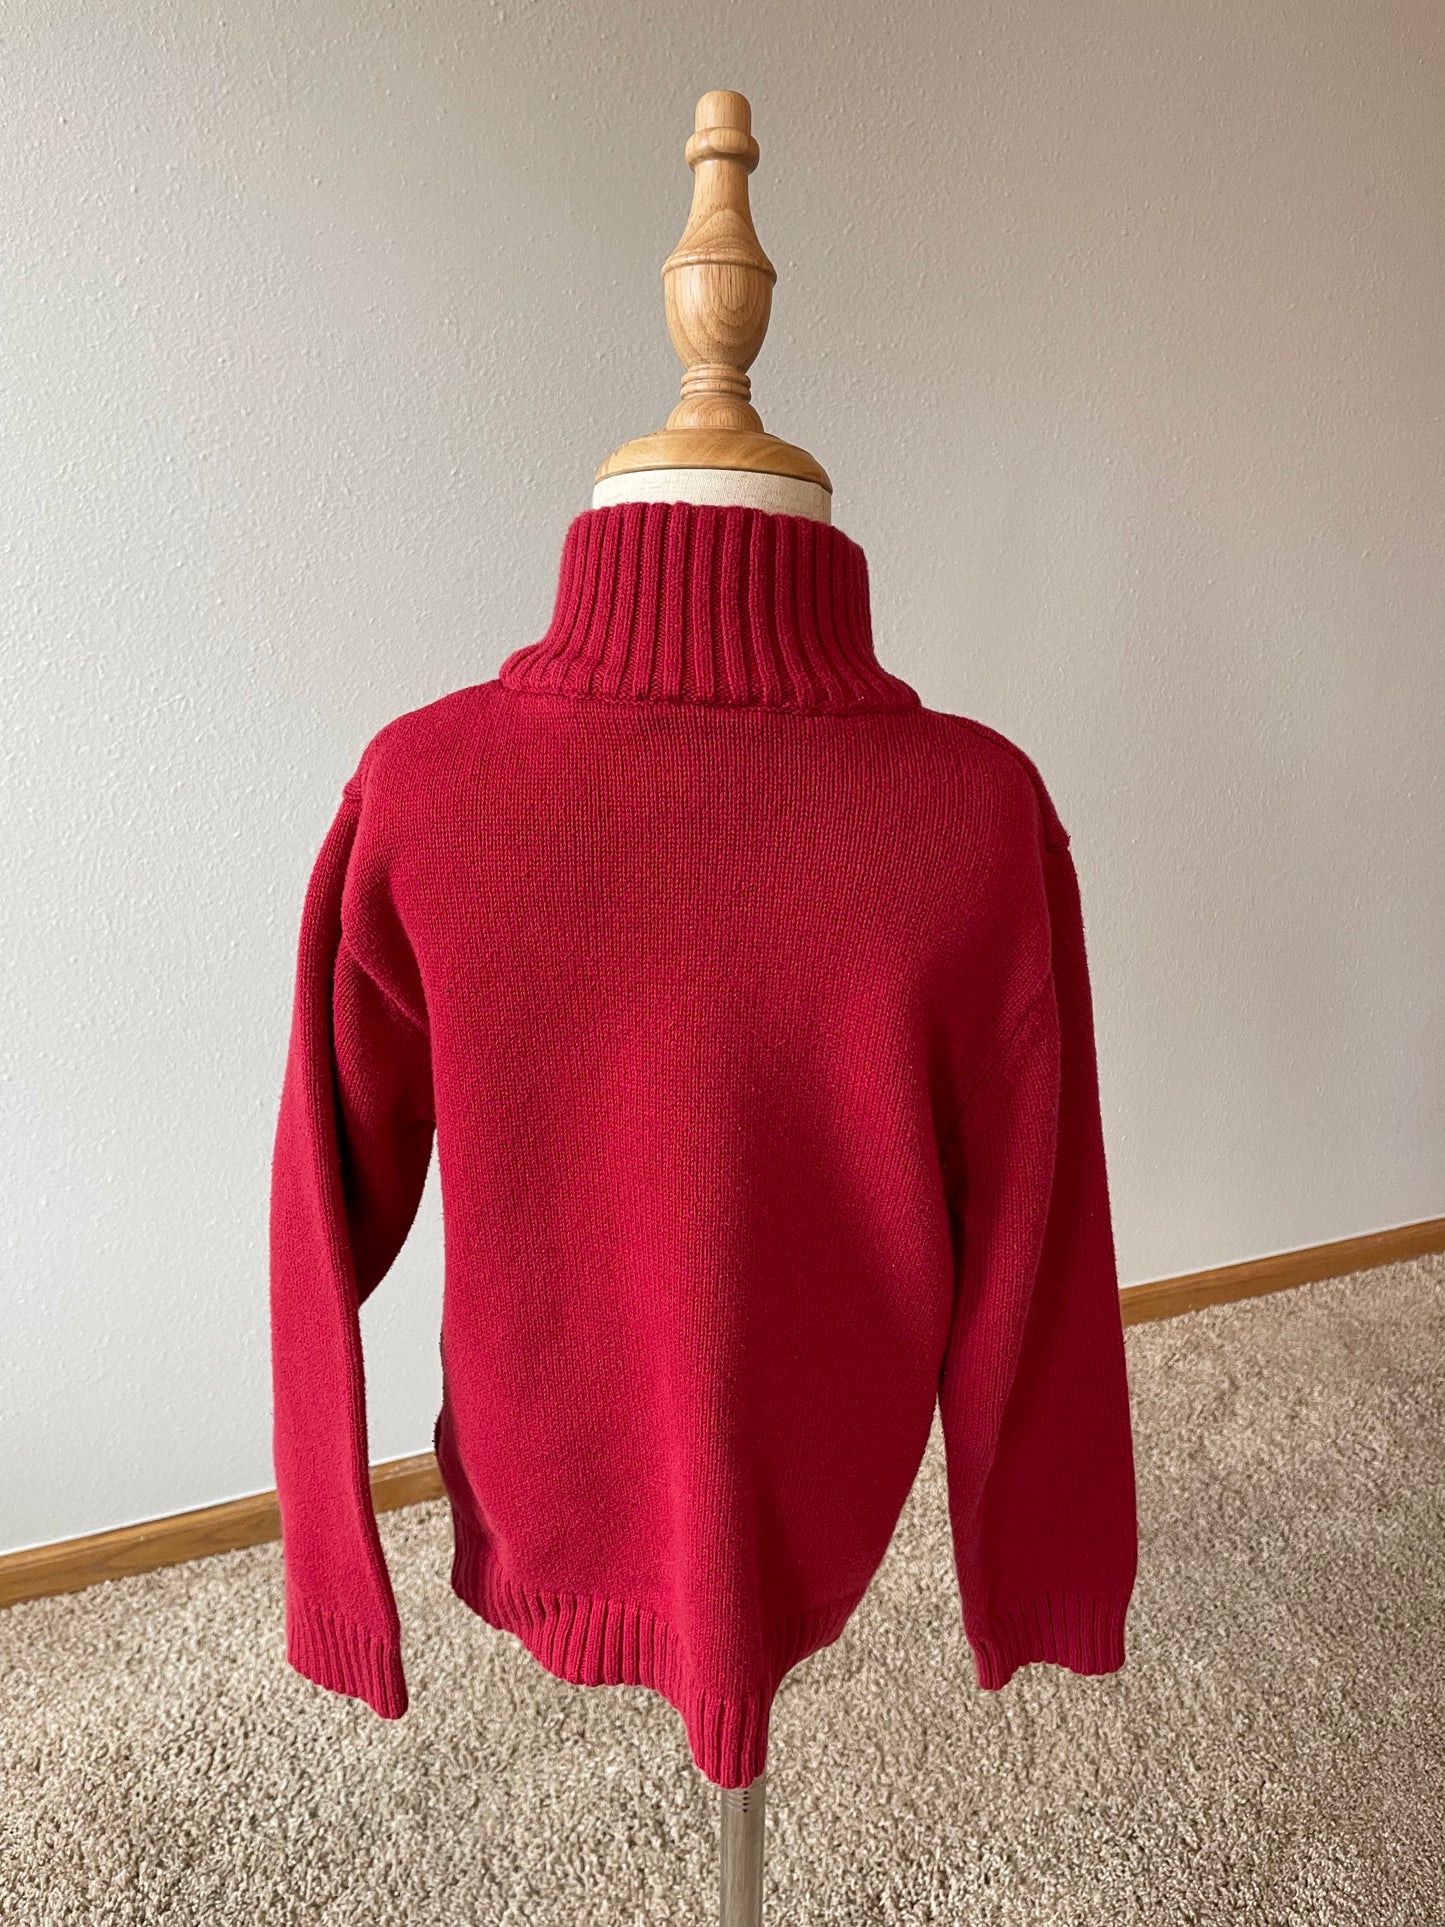 IZOD Sweater